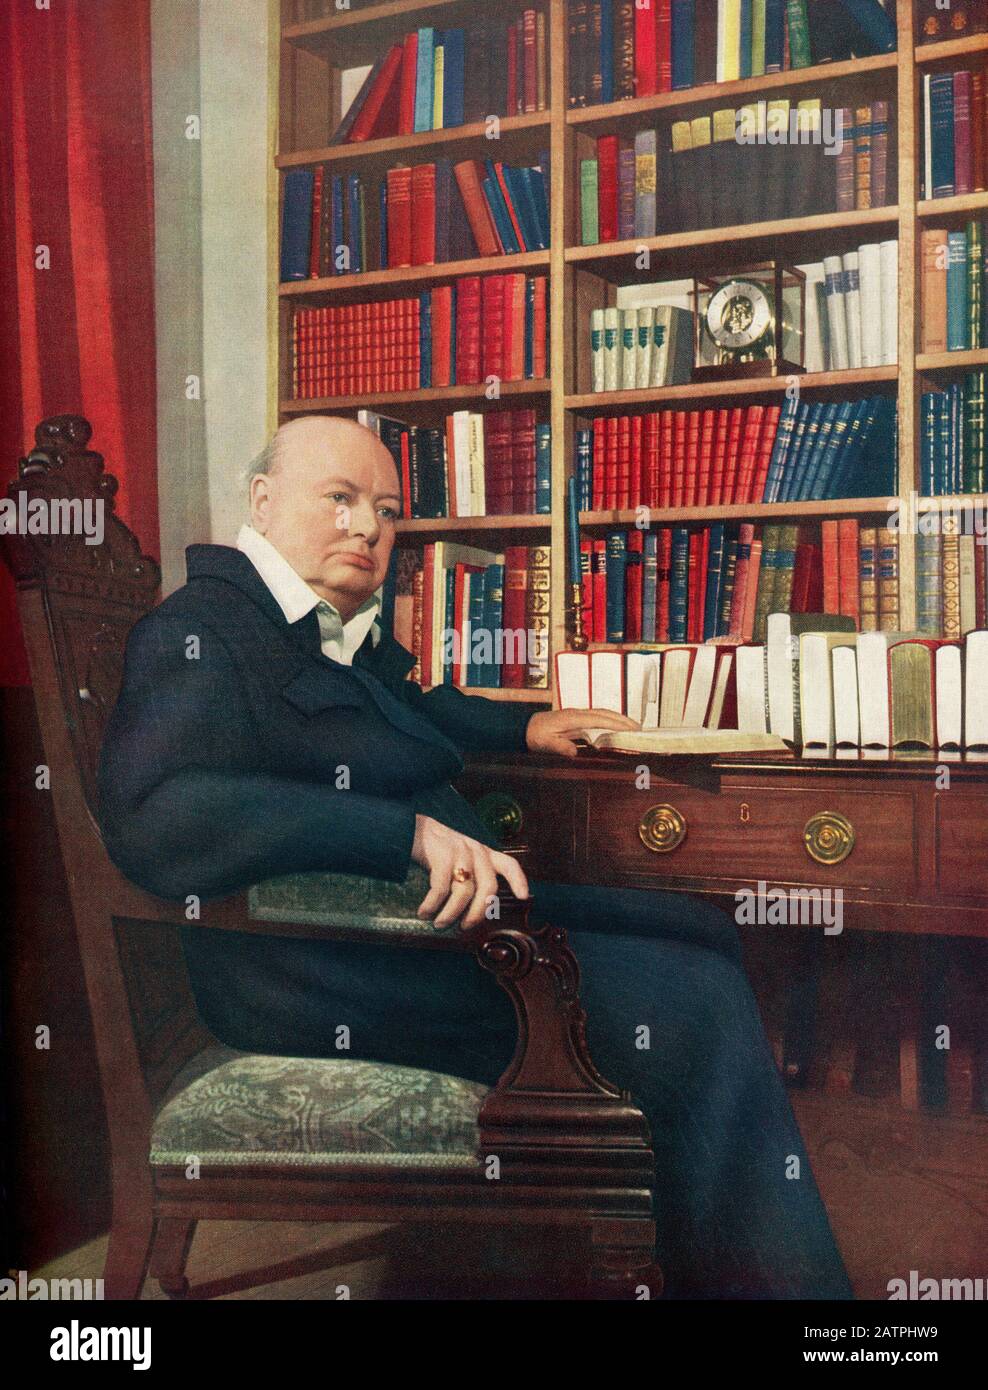 Sir Winston Leonard Spencer-Churchill, 1874 - 1965. Officier de l'armée britannique, homme politique, écrivain et deux fois Premier Ministre du Royaume-Uni. Banque D'Images